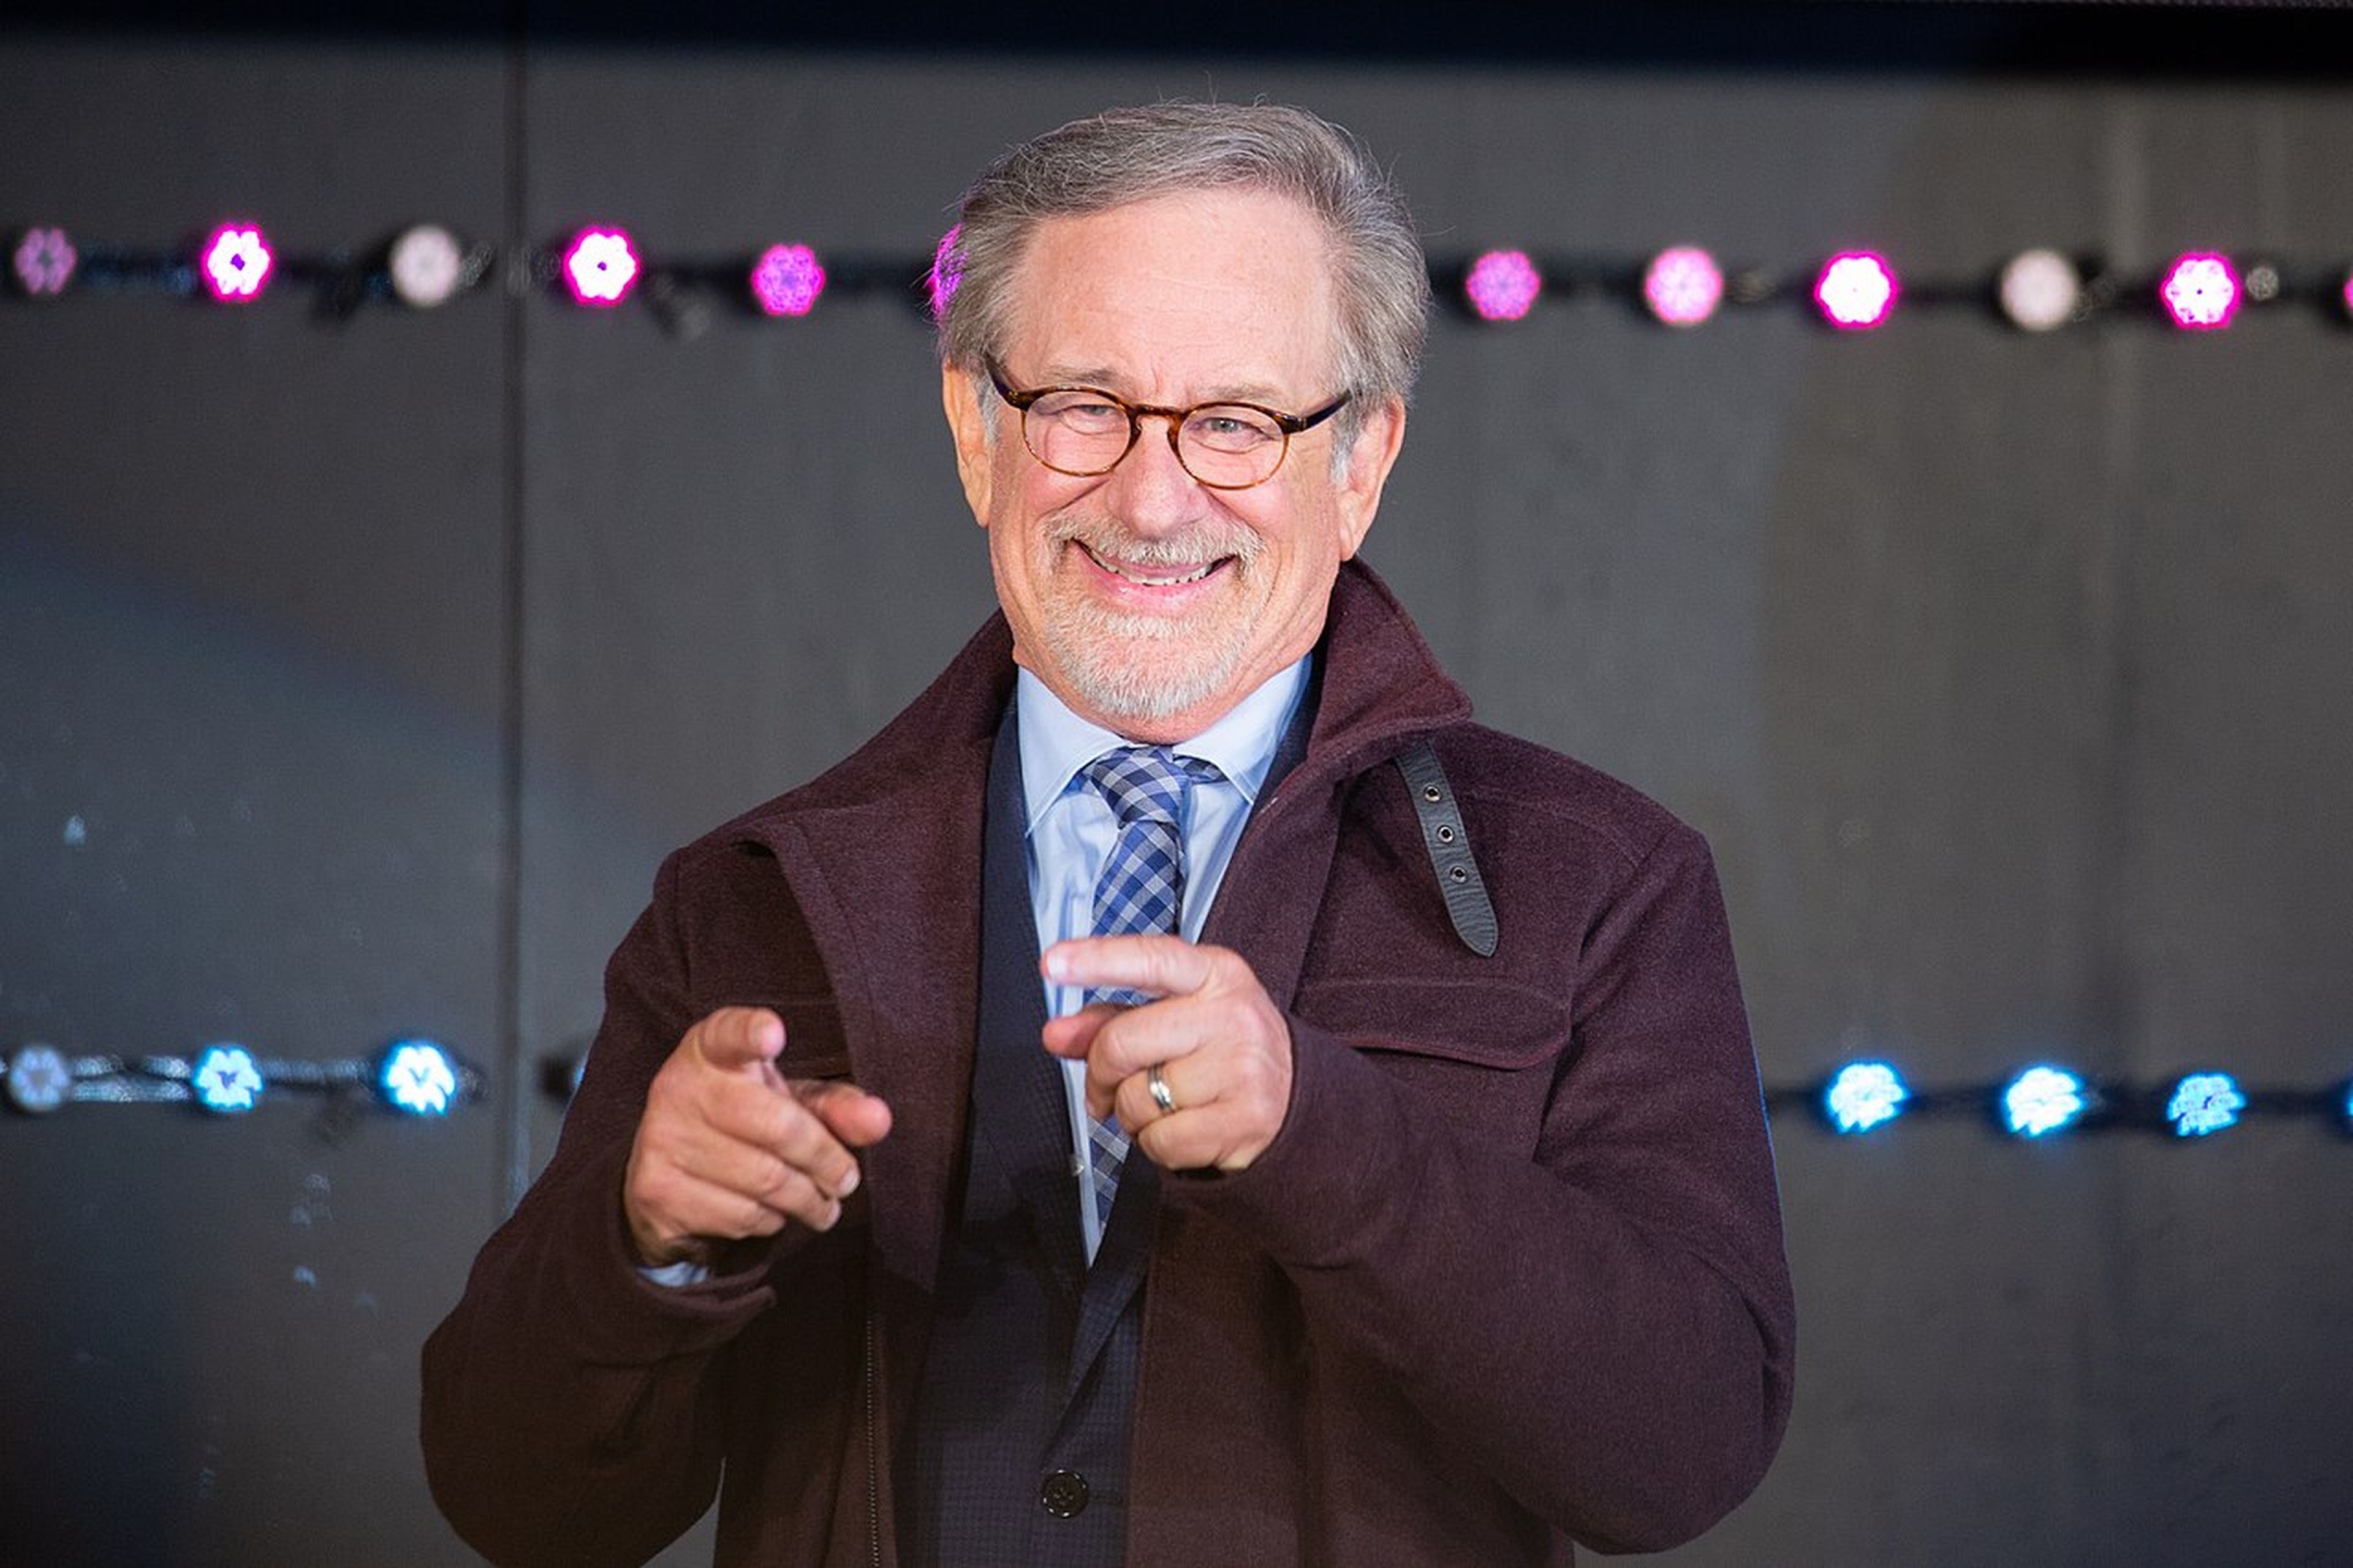 Steben Spielberg